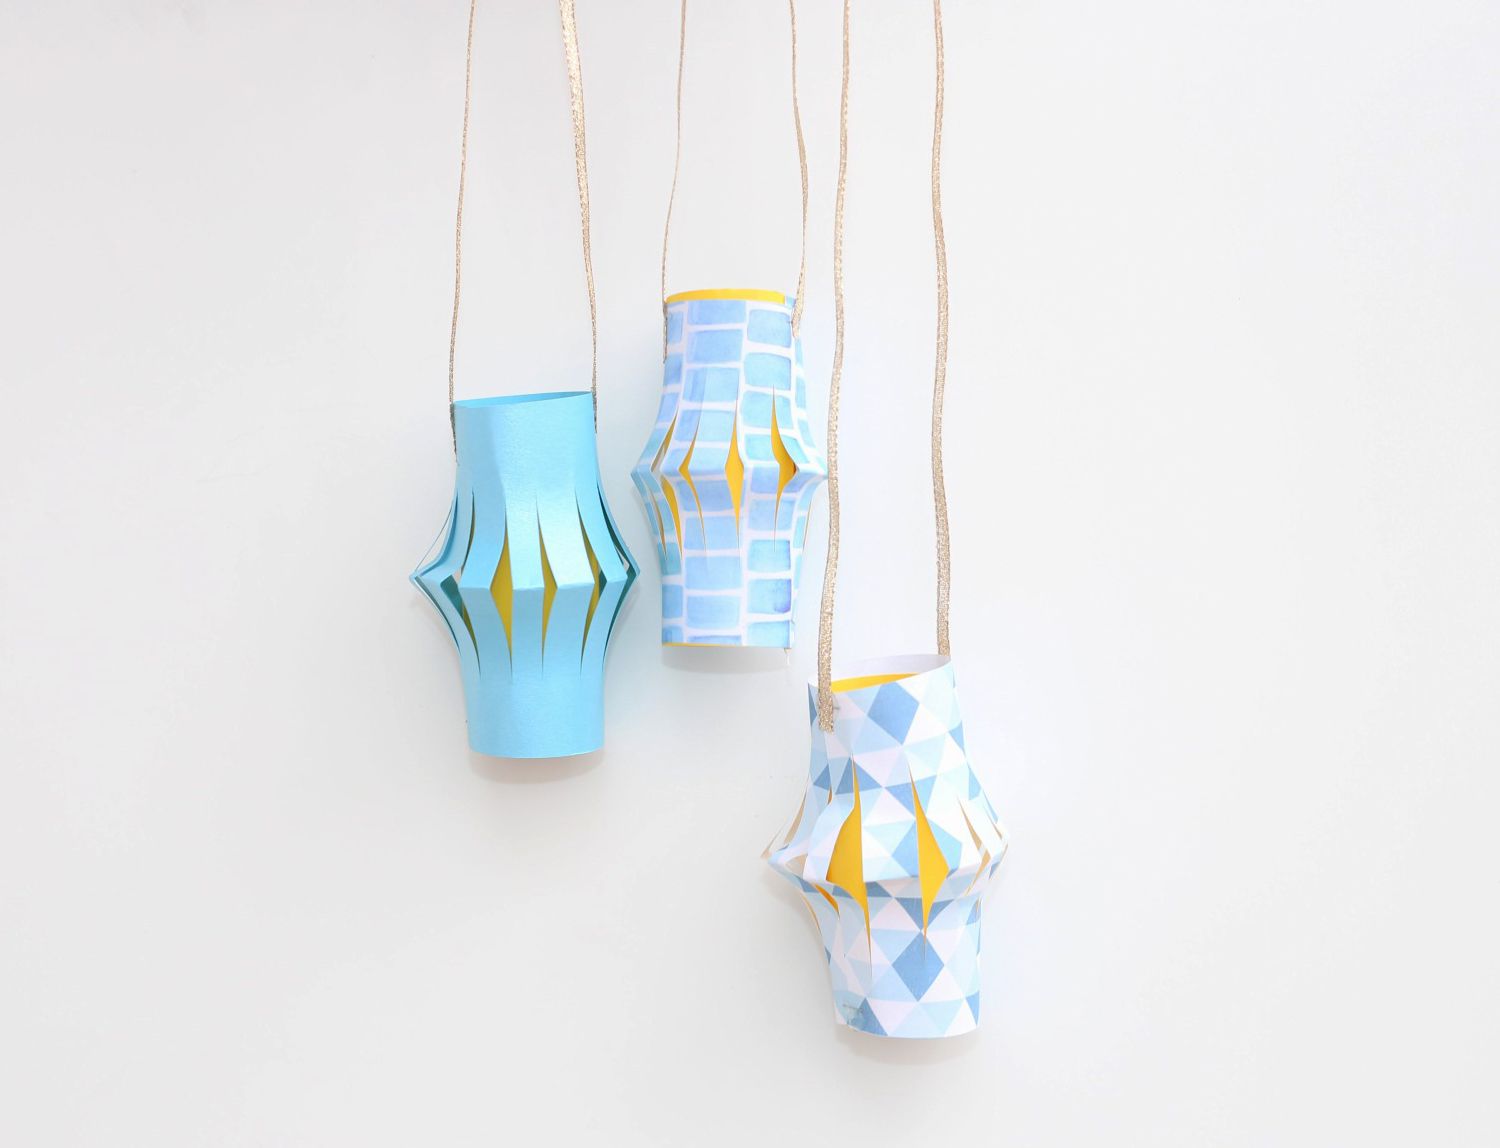 Hanging paper lanterns